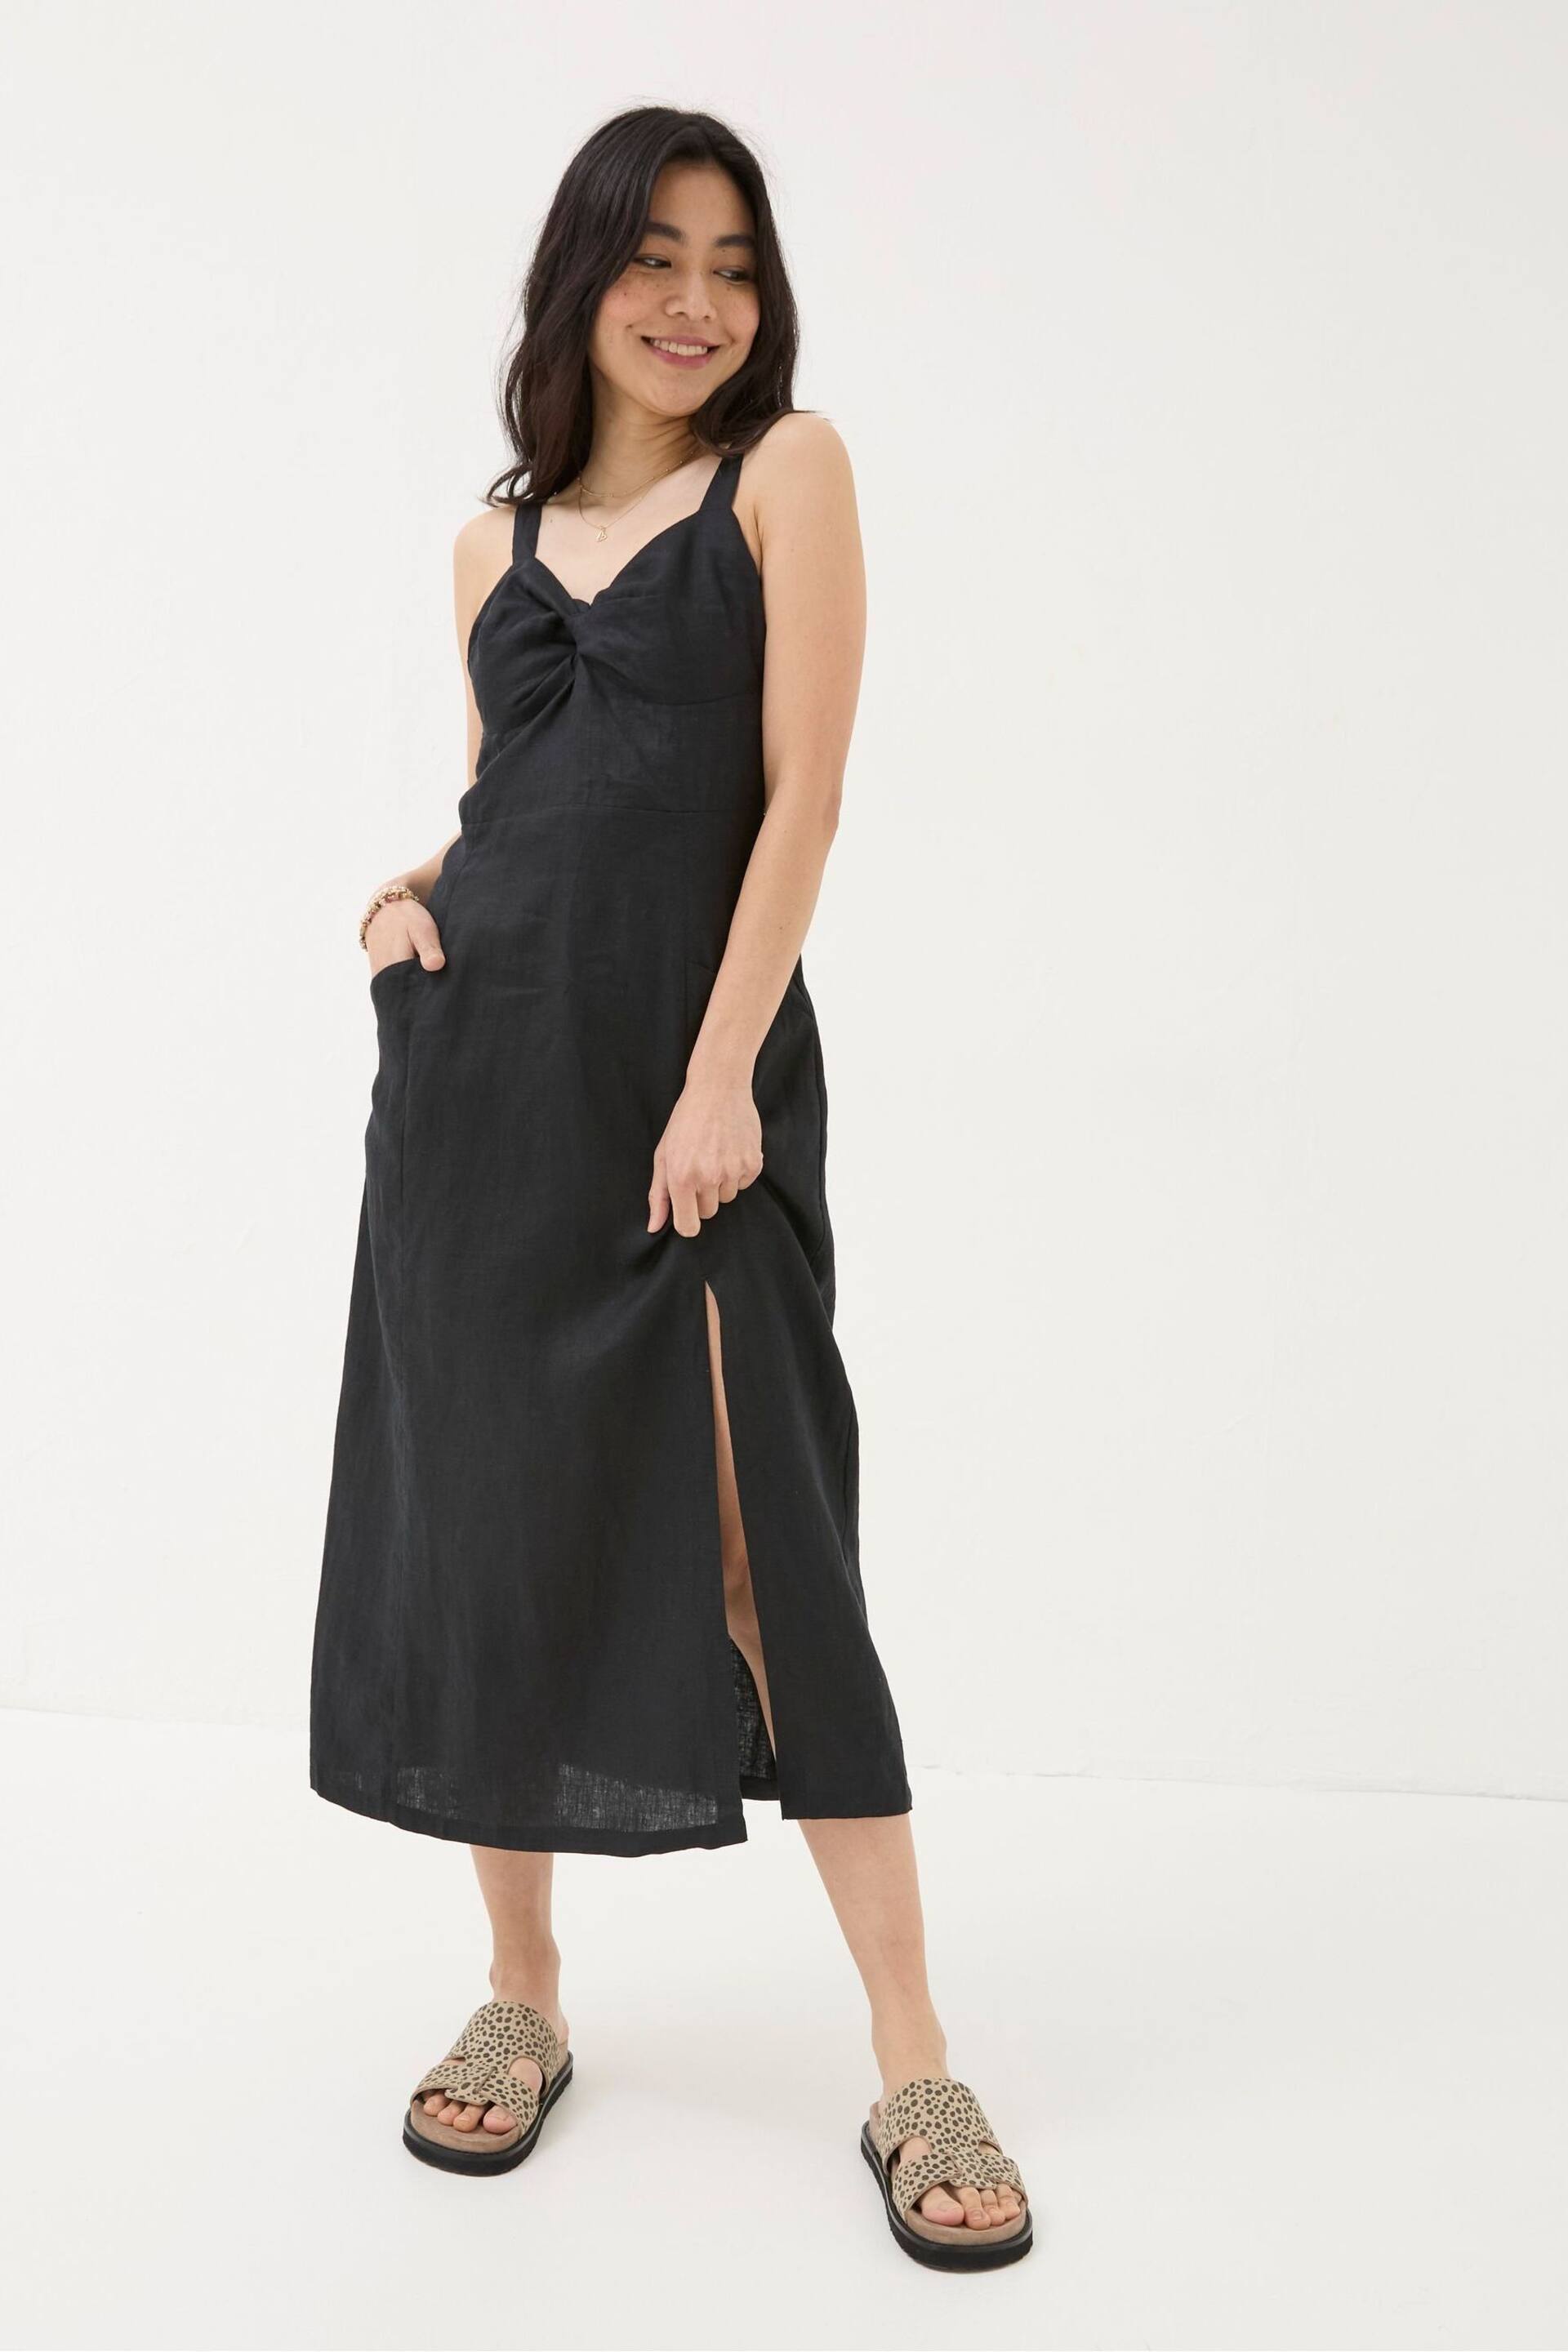 FatFace Black Talia Linen Midi Dress - Image 1 of 6